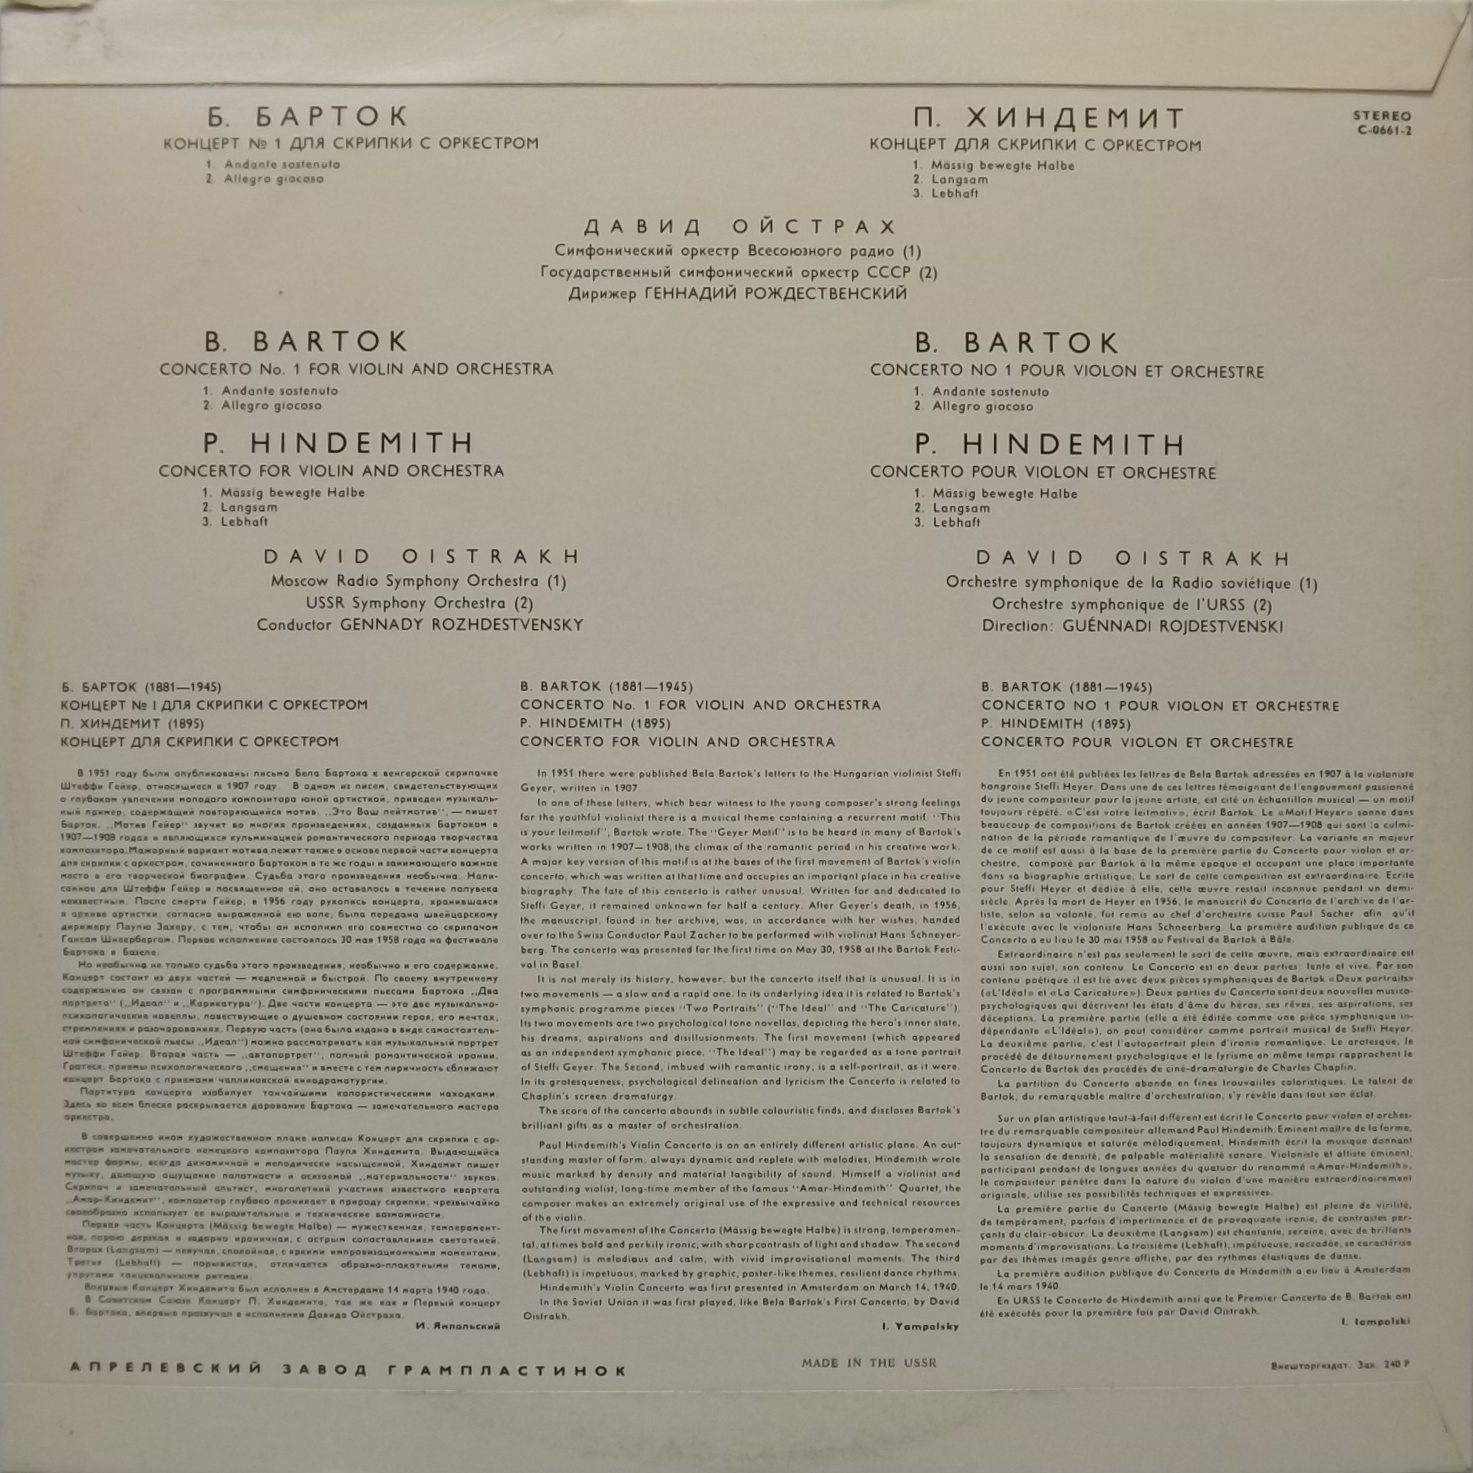 Б. Барток, П. Хиндемит: Концерты для скрипки с оркестром (Д. Ойстрах, Г. Рождественский)